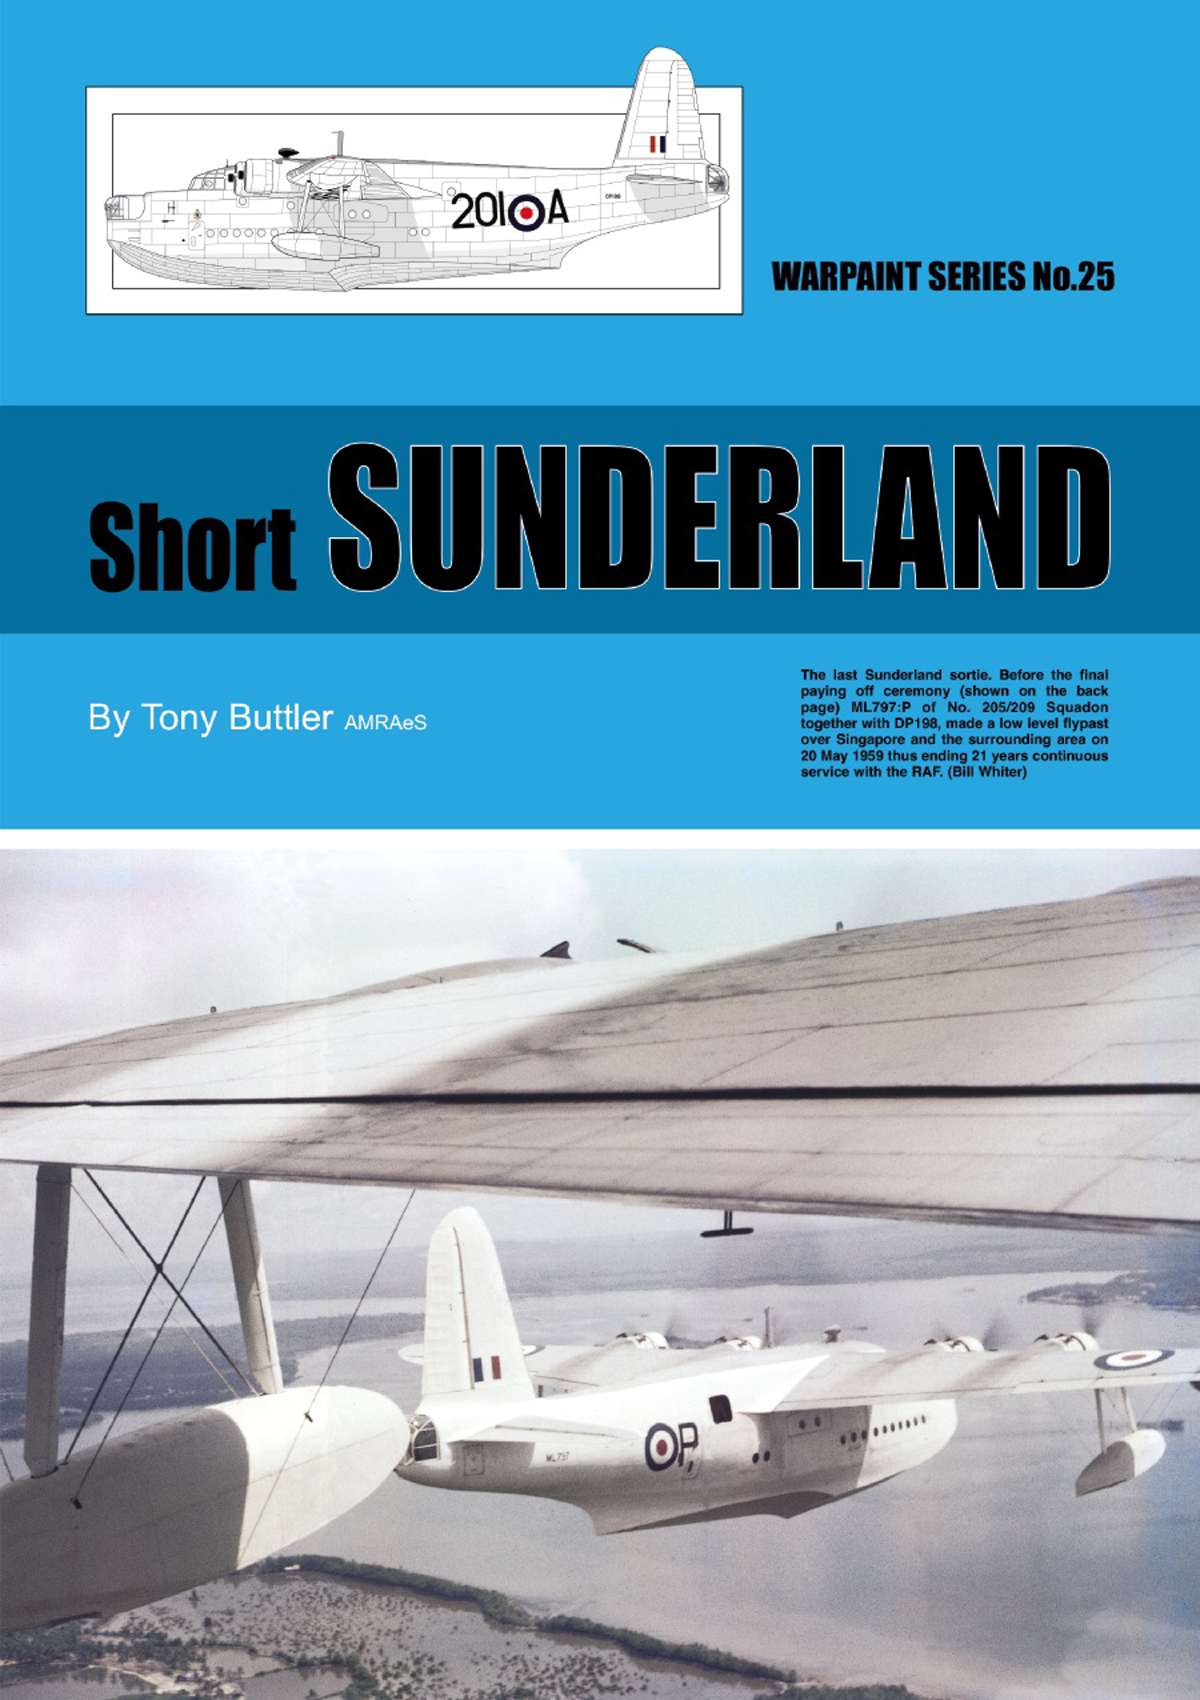 N25 - Short Sunderland